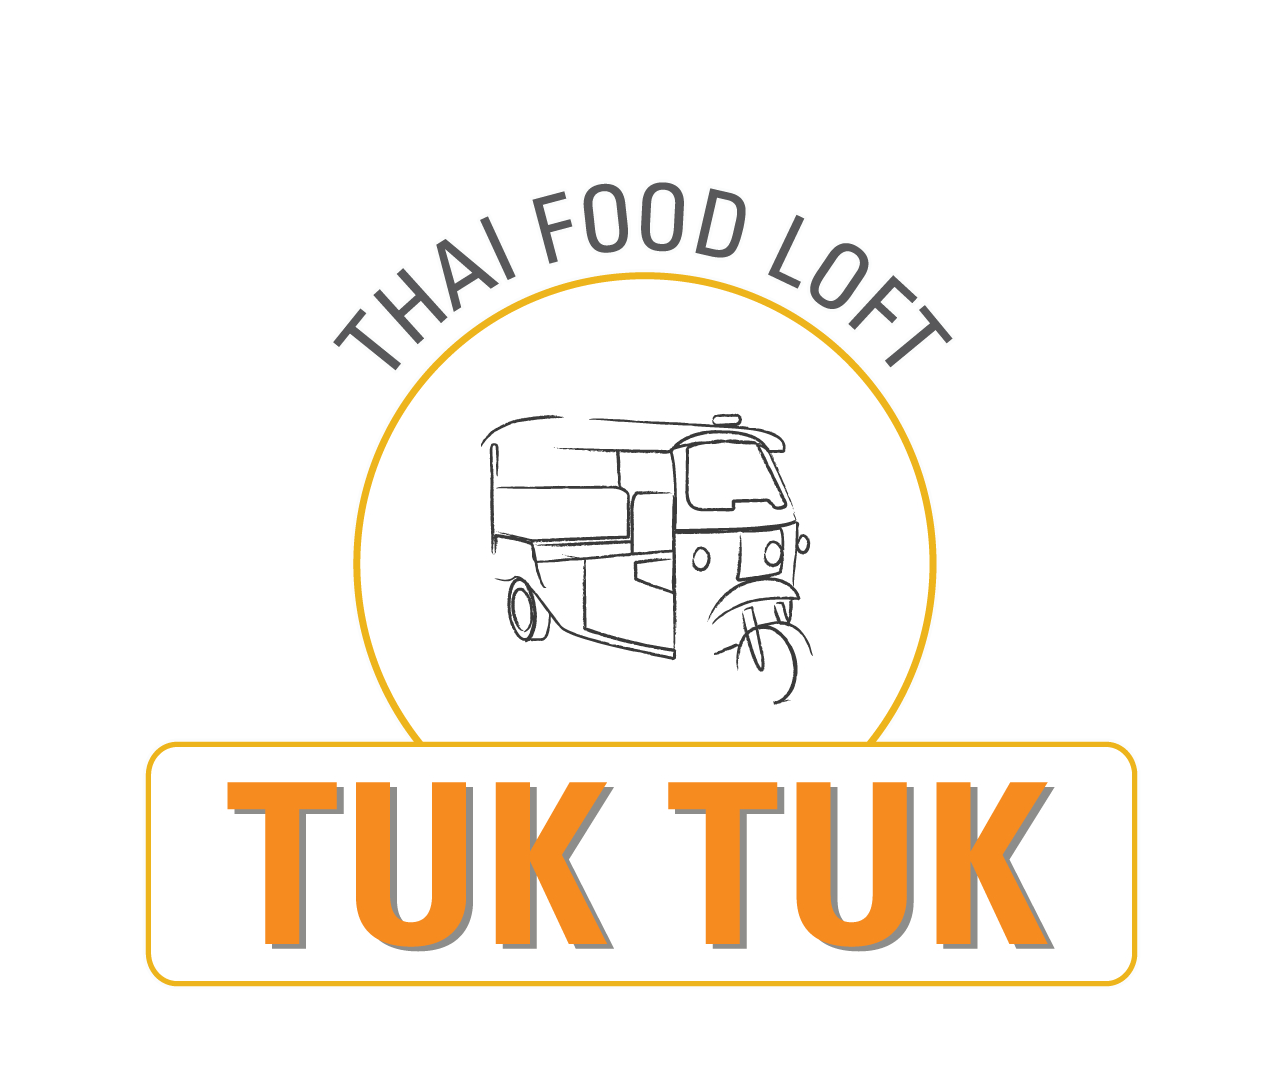 Tuk Tuk Thai Food Loft